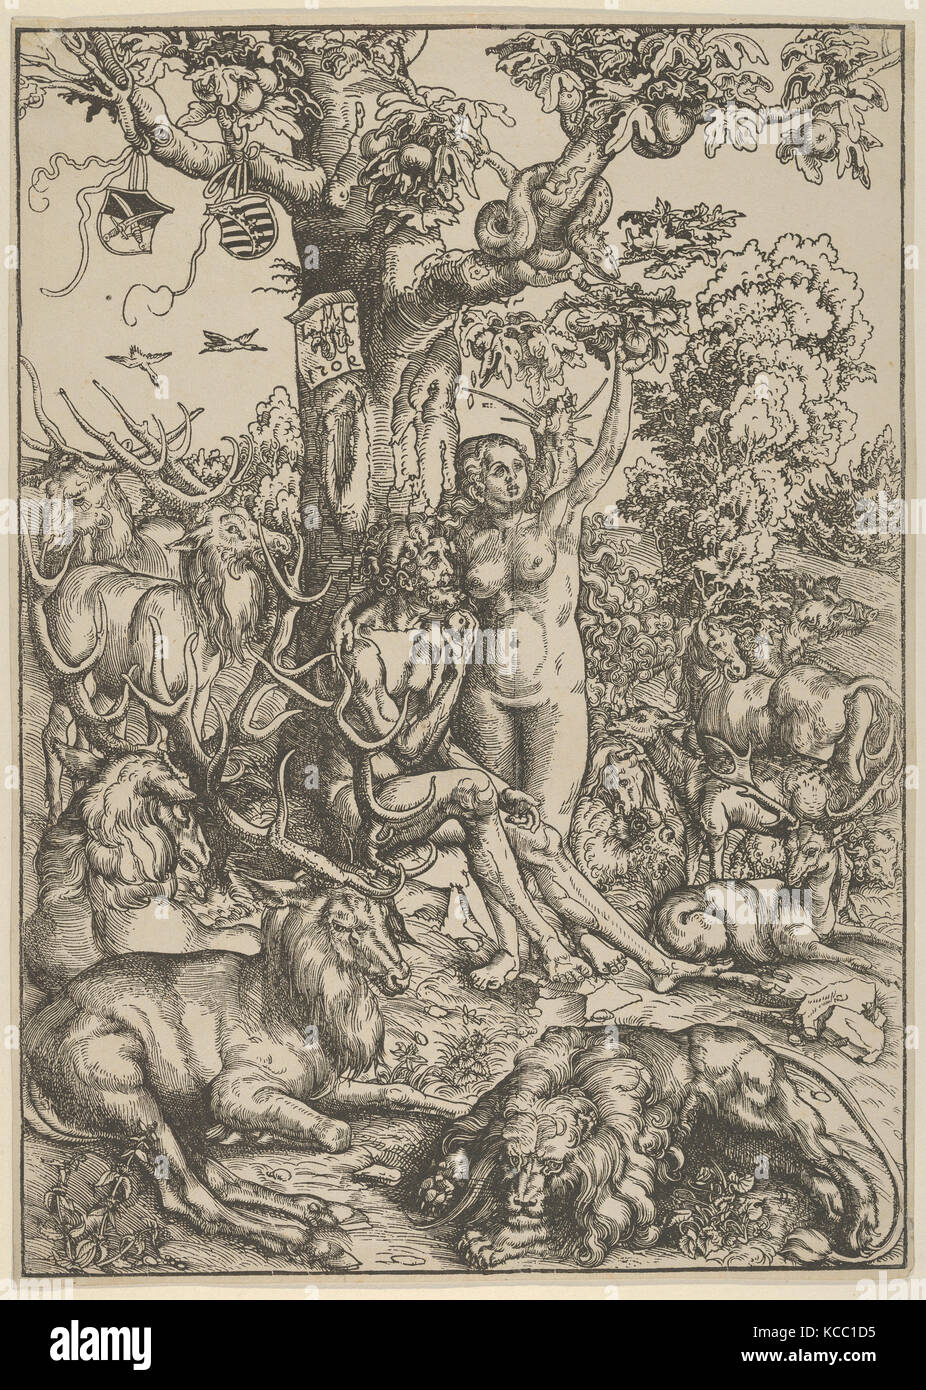 Adam et Eve au paradis, Lucas Cranach le Vieux, 1509 Banque D'Images